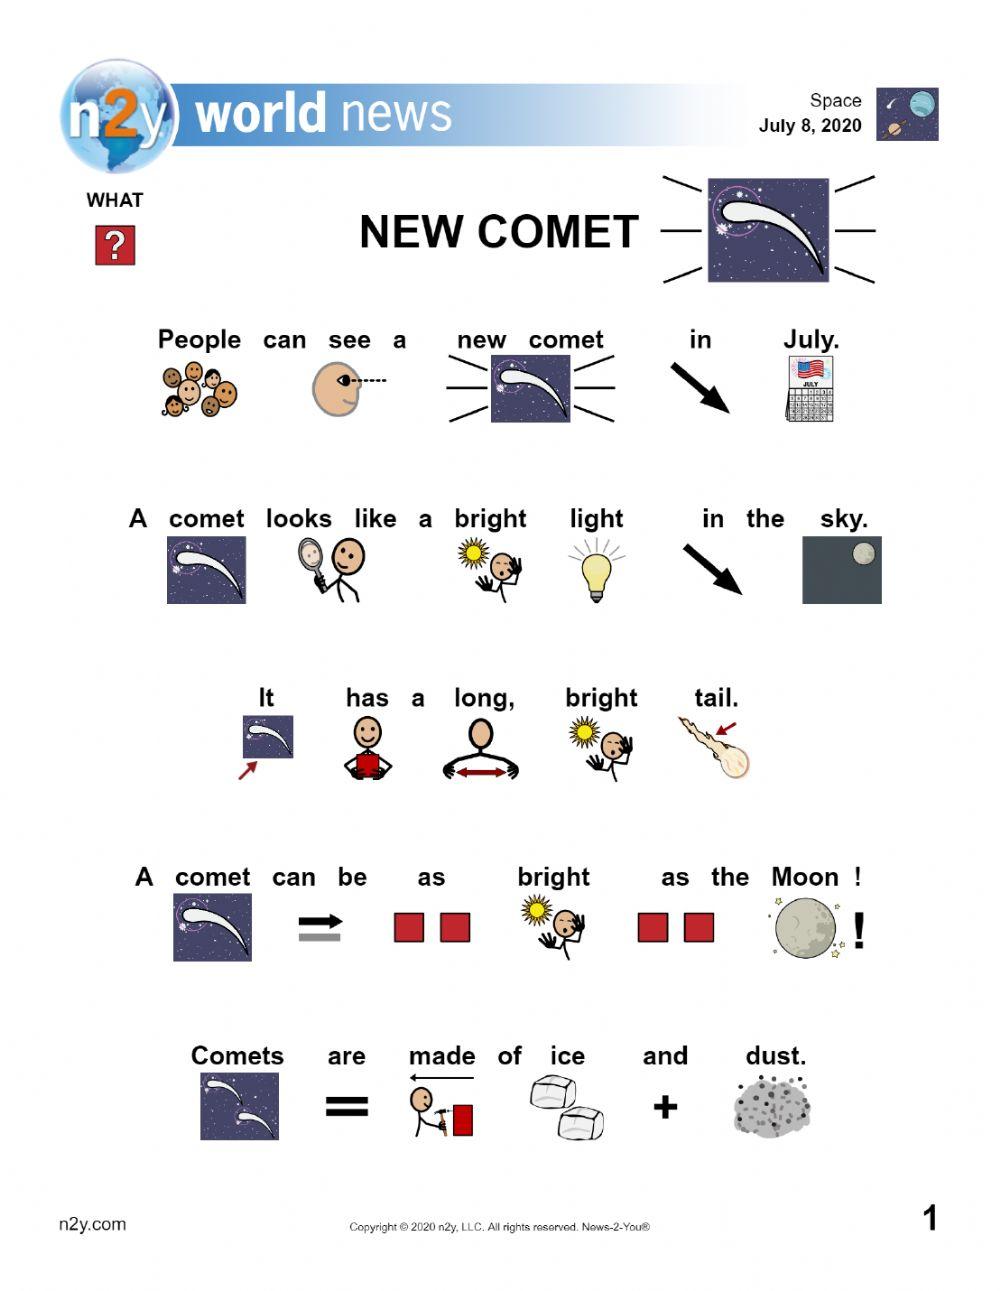 New comet